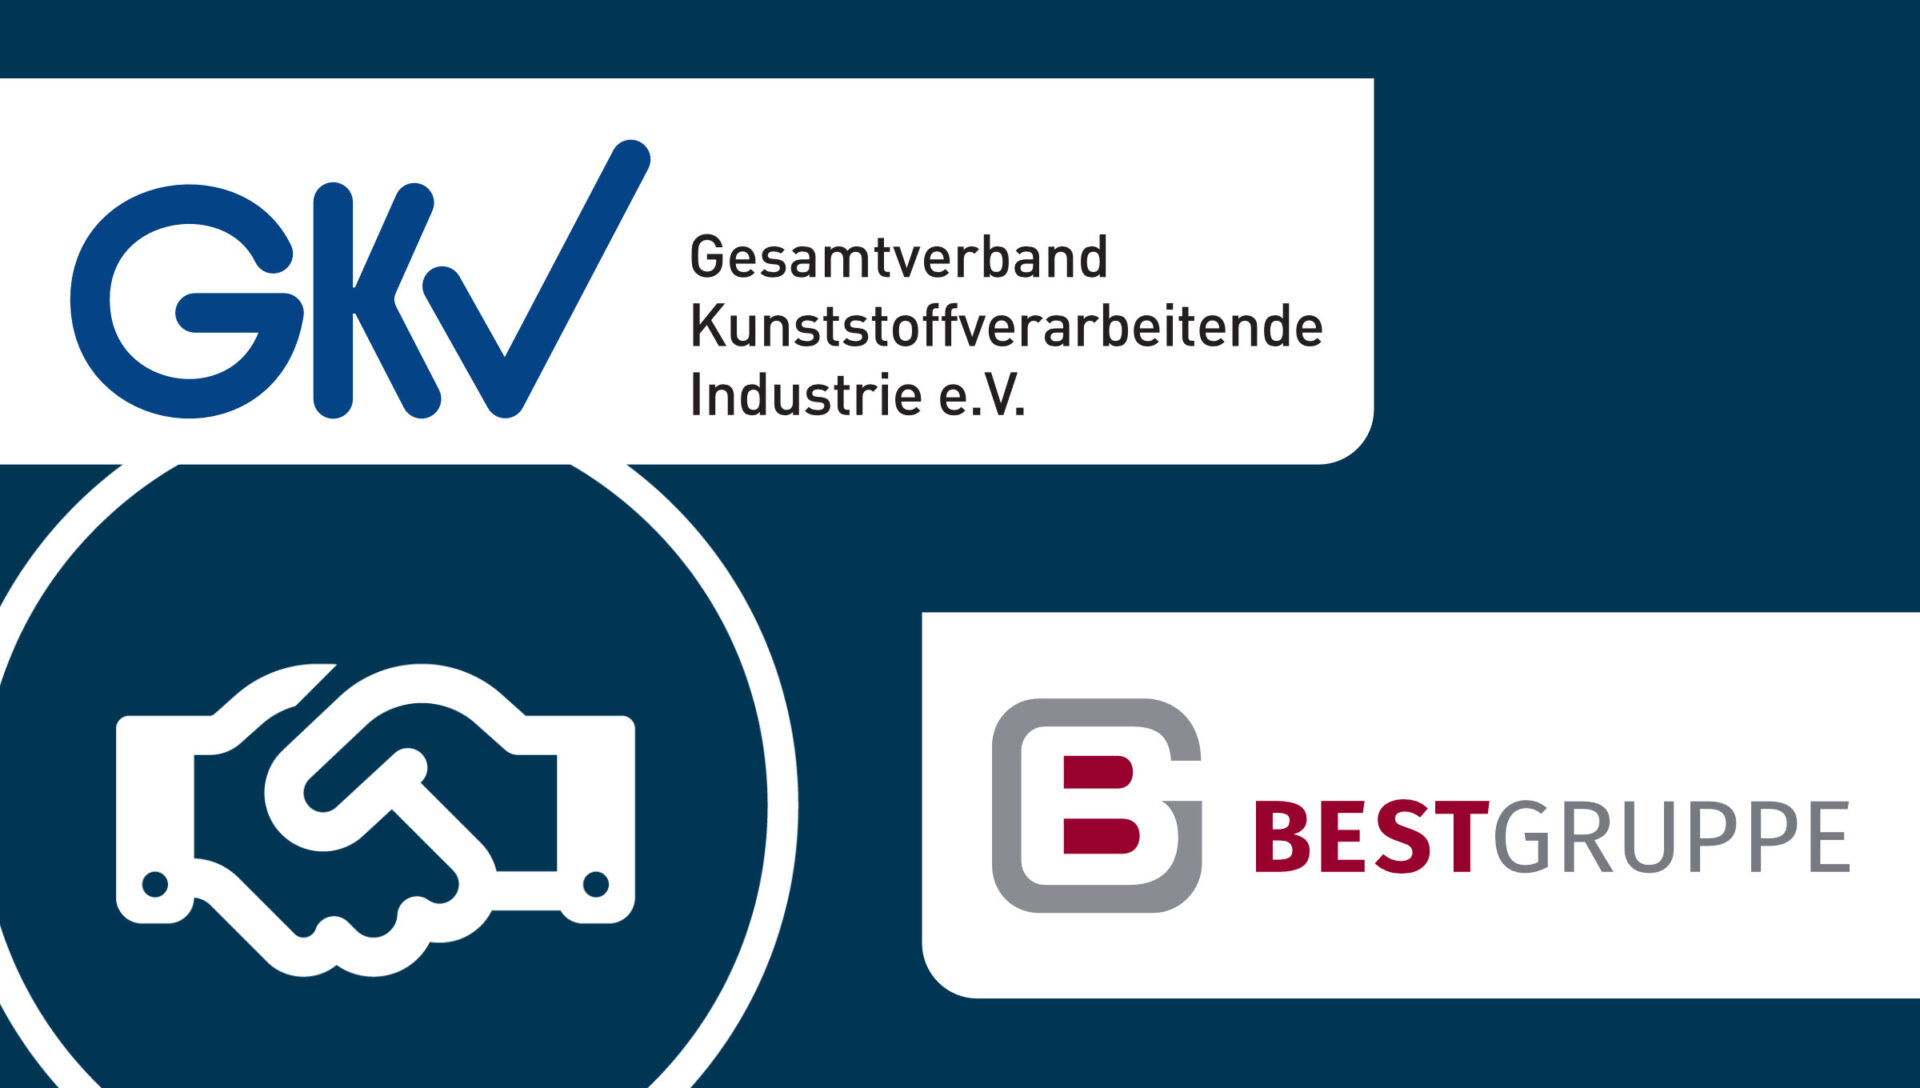 Abbildung der Logos von GKV e V. und BEST GRUPPE als Zeichen für Zusammenarbeit